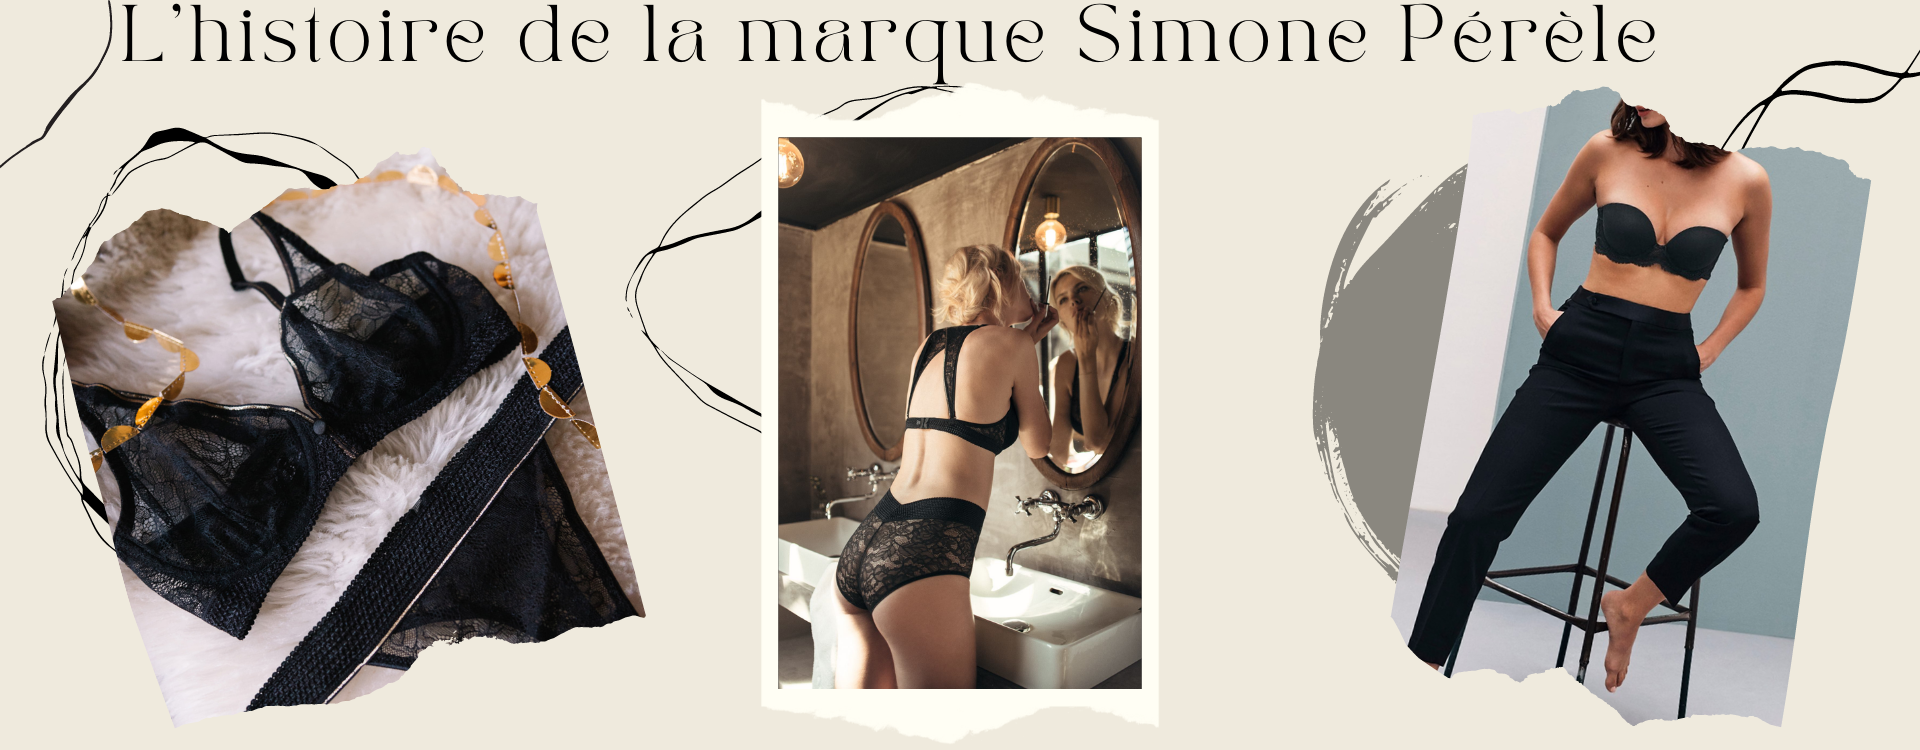 L'histoire de la marque Simone Pérèle